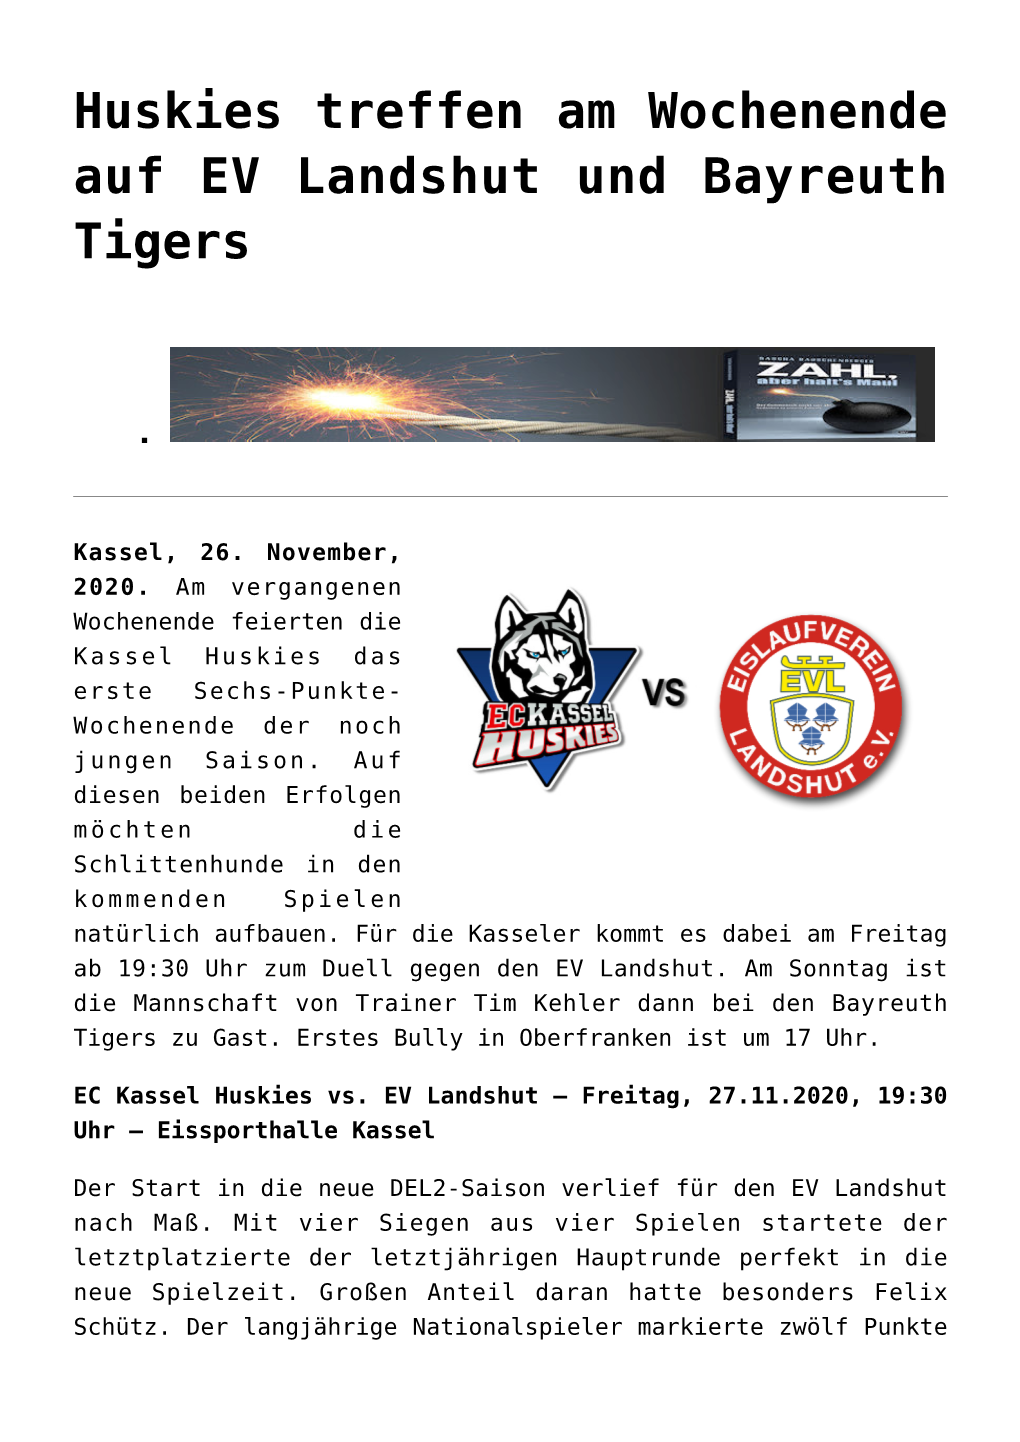 Huskies Treffen Am Wochenende Auf EV Landshut Und Bayreuth Tigers